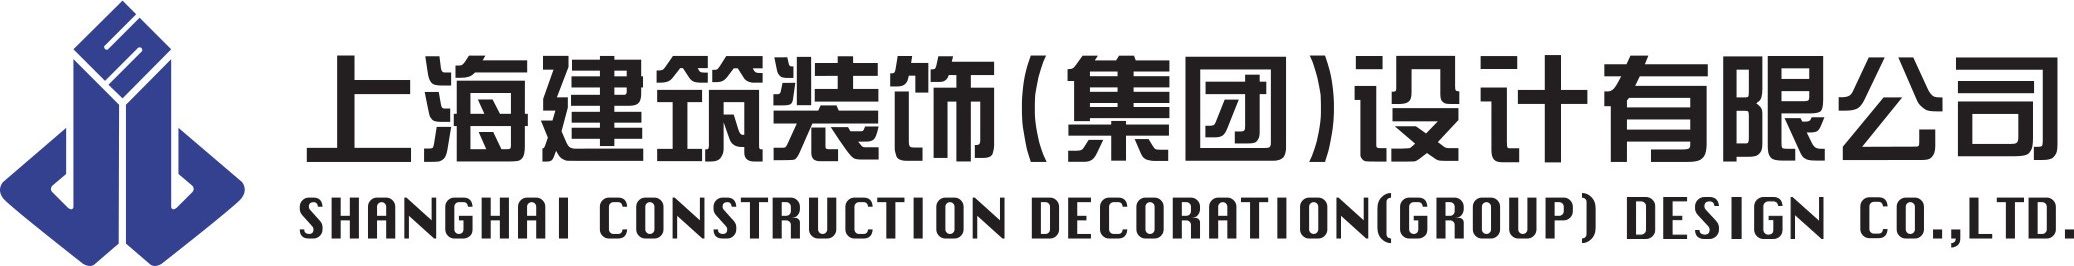 上海建筑装饰(集团)设计有限公司